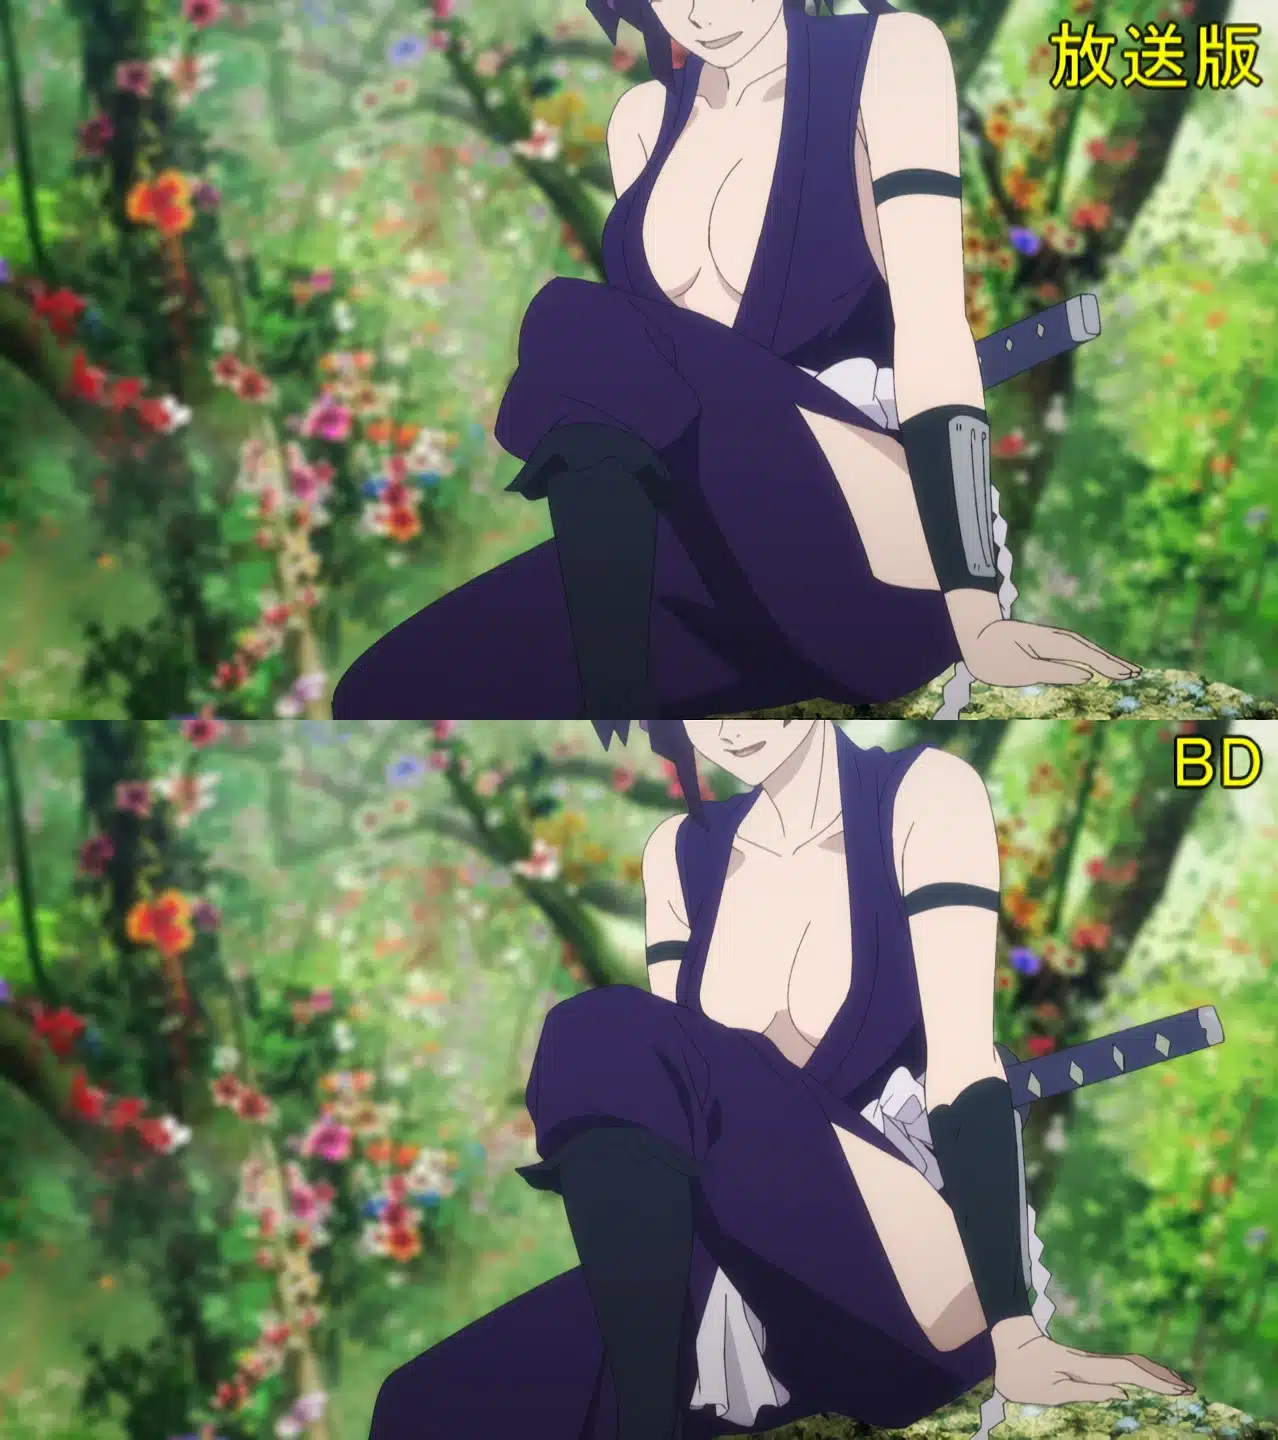 catrina duncan share anime episode boobs shrink photos